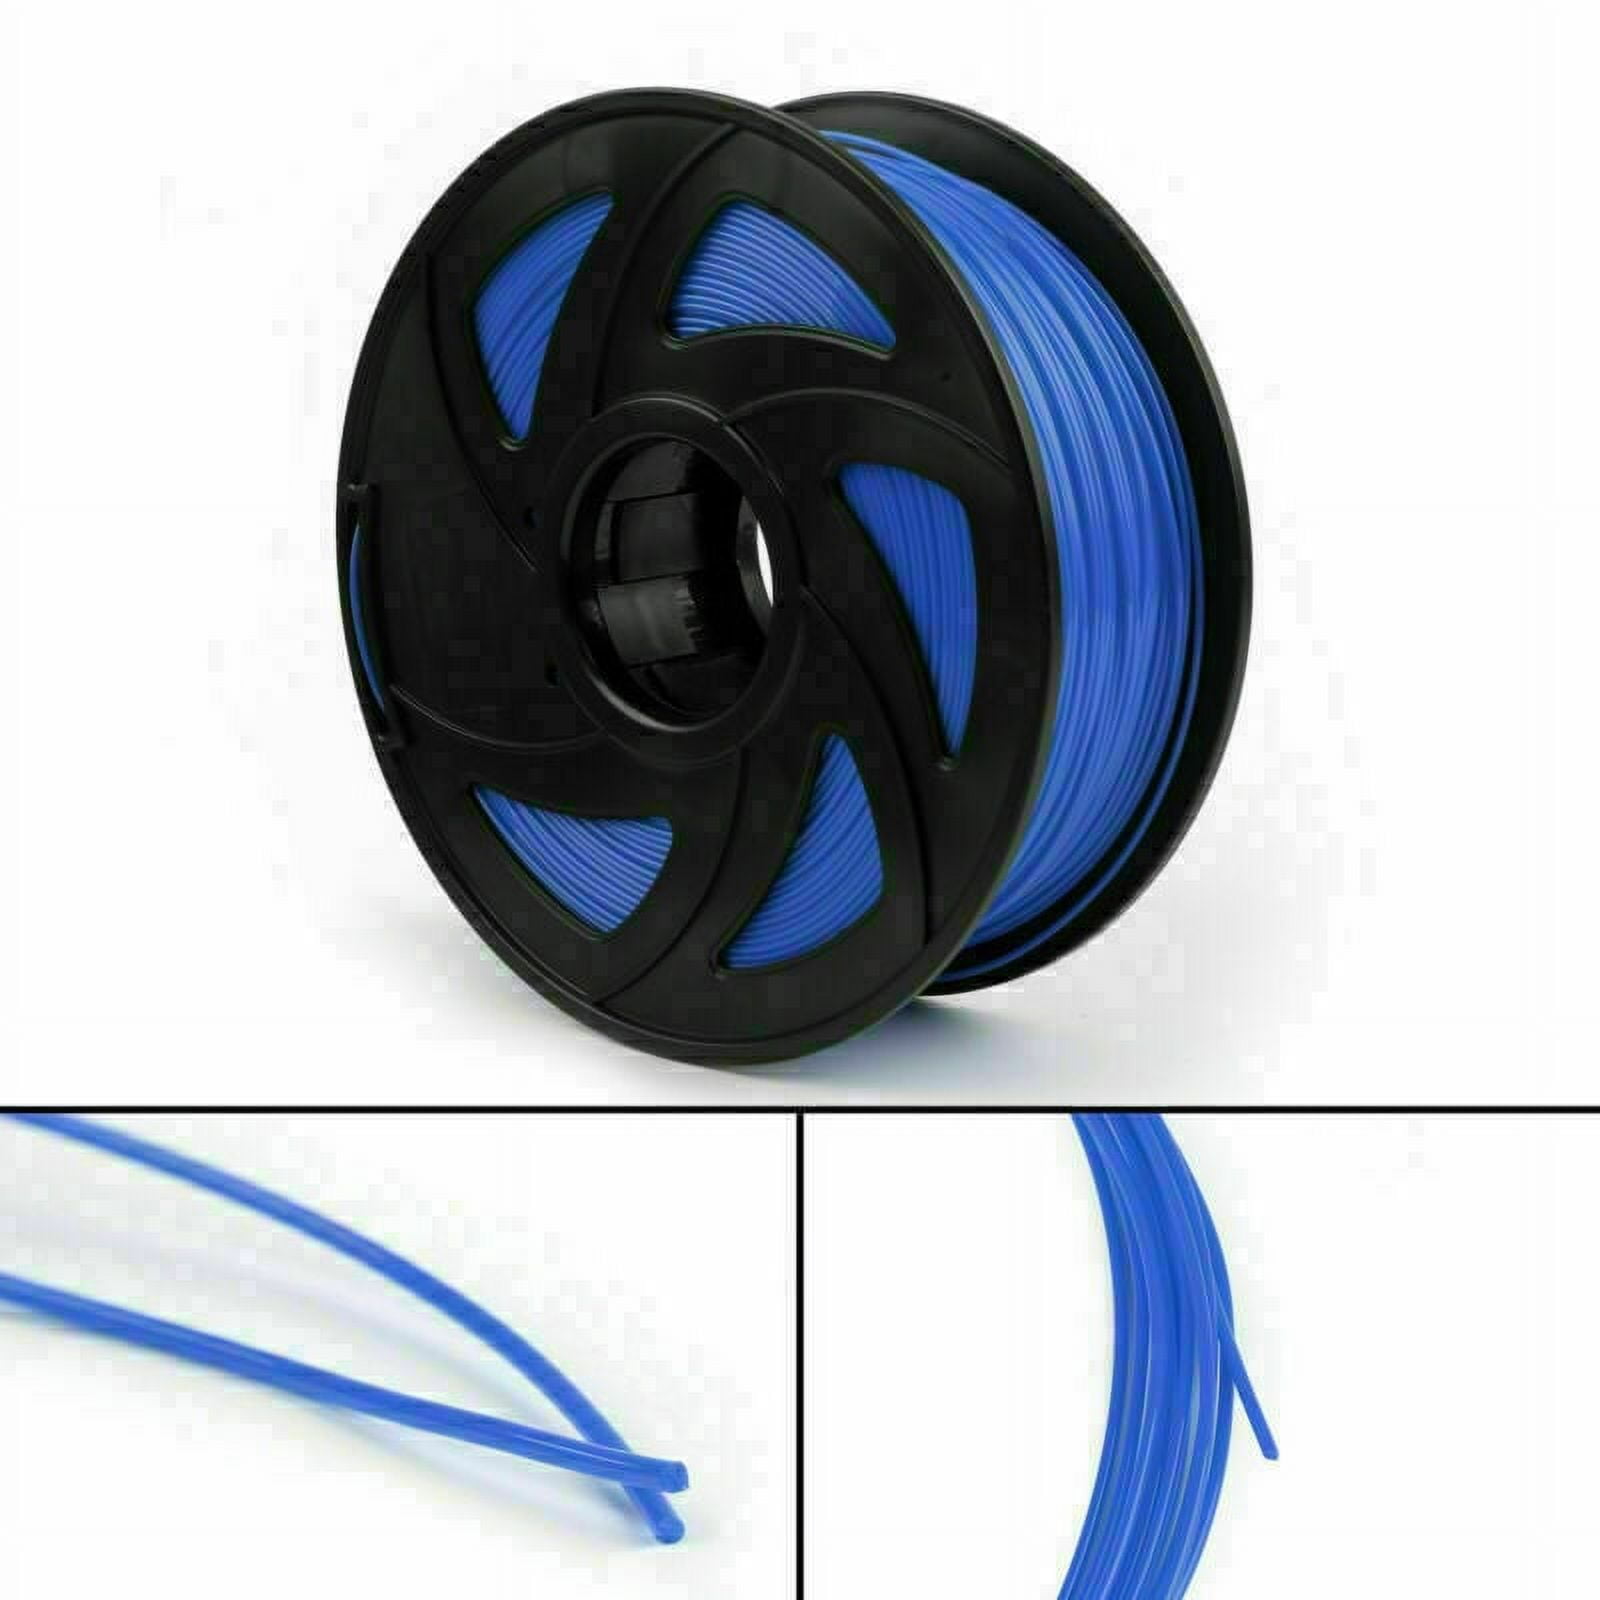 Reprapper Carbon Fiber PLA Filament for 3D Printer & 3D Pen 1.75mm (±  0.03mm) 2.2lb (1kg)